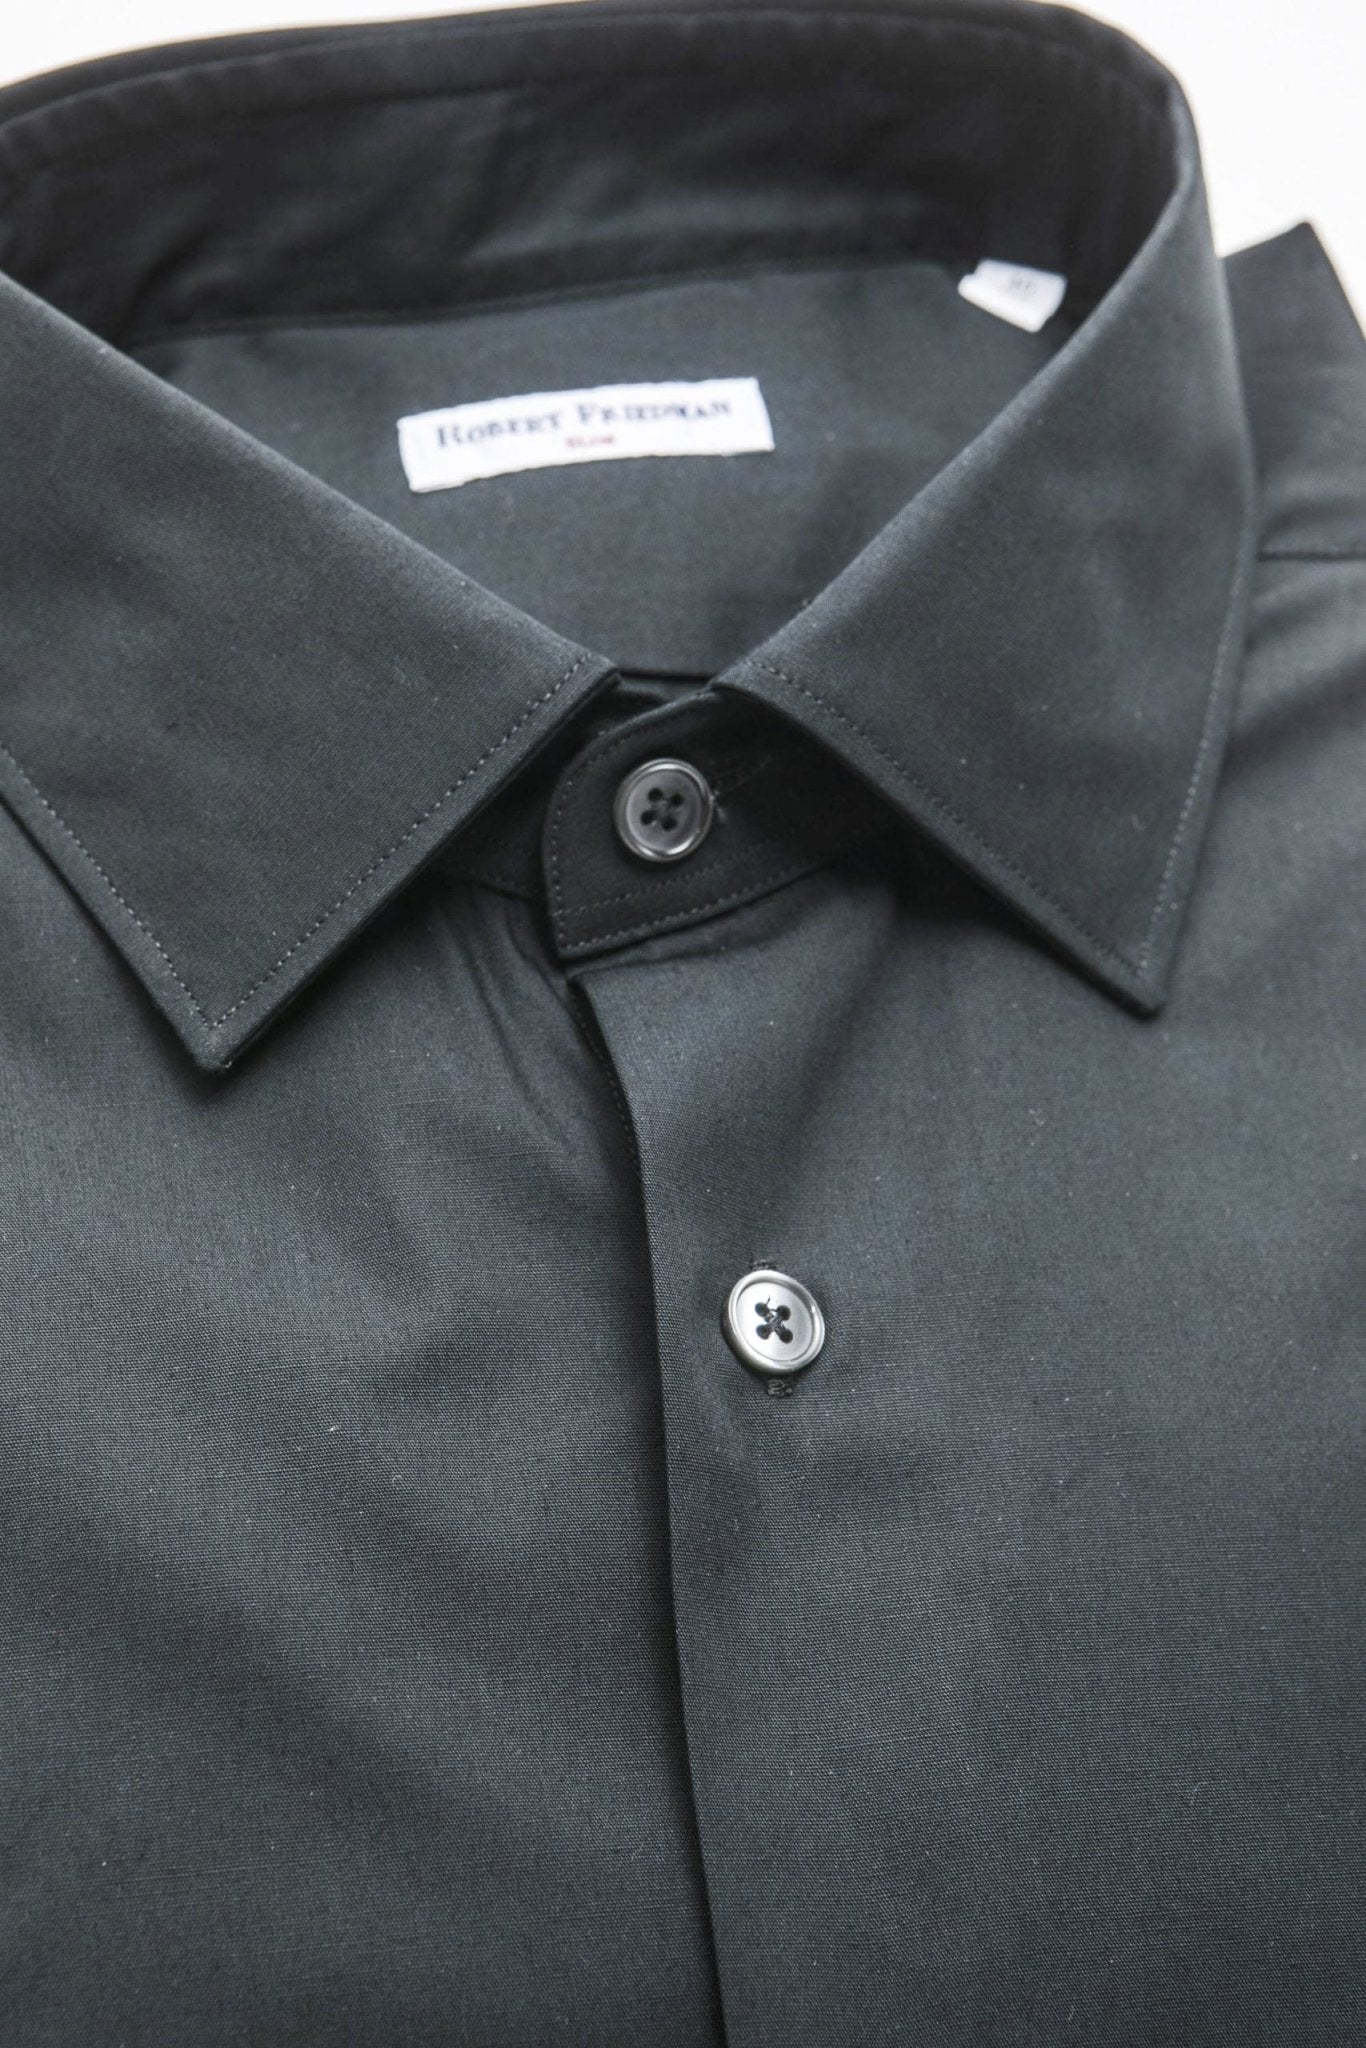 Robert Friedman Black Cotton Shirt - Fizigo